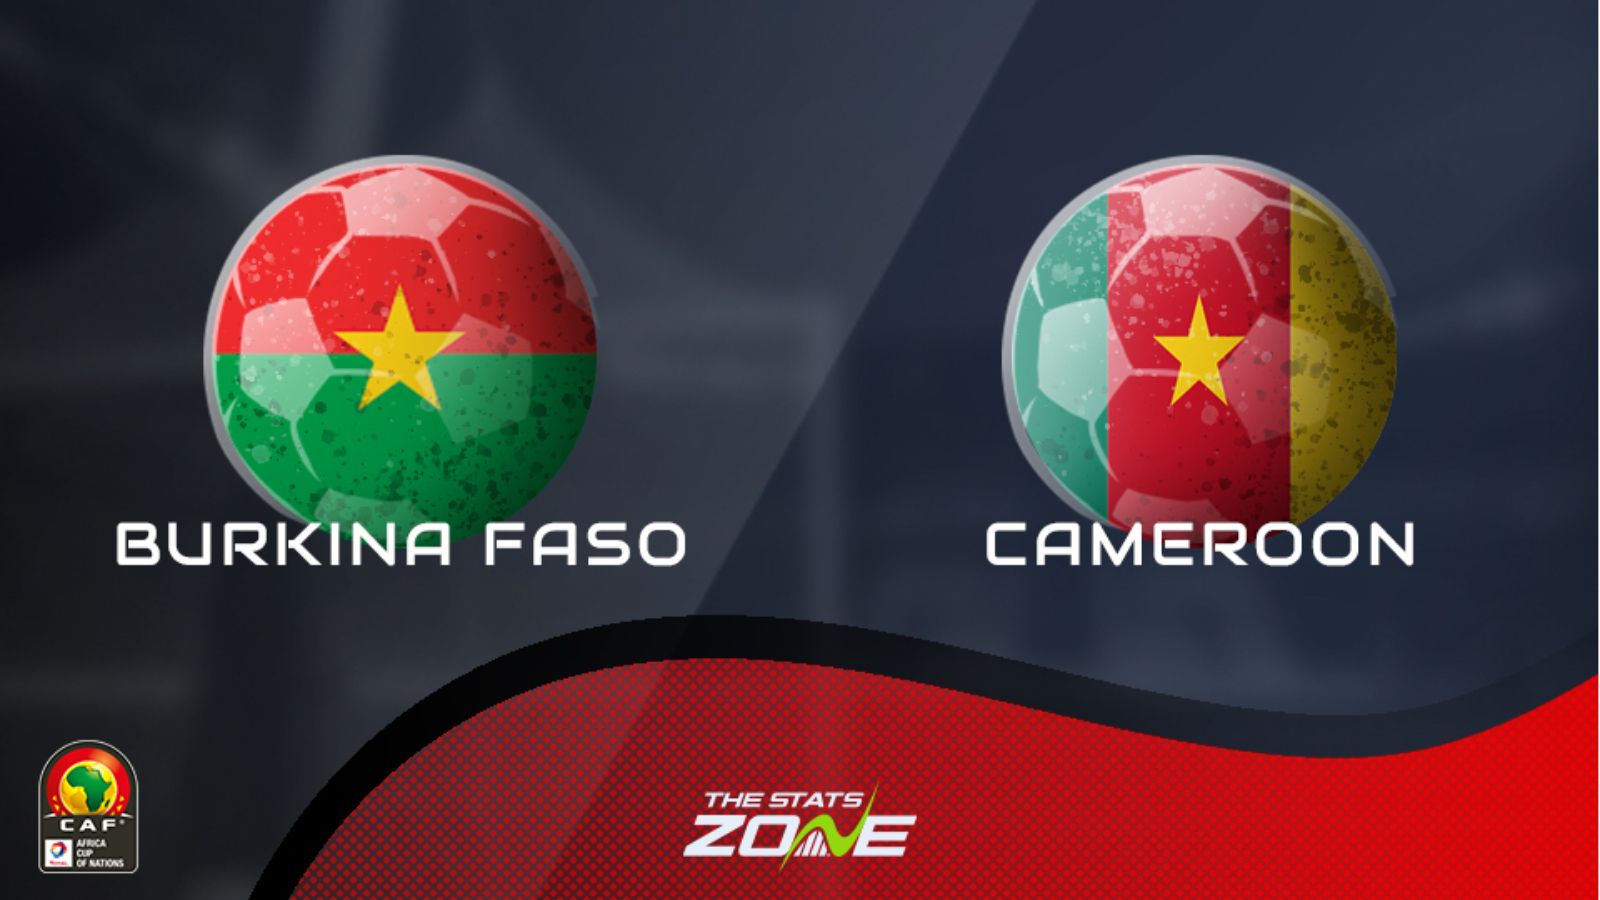 Burkina faso vs cameroon